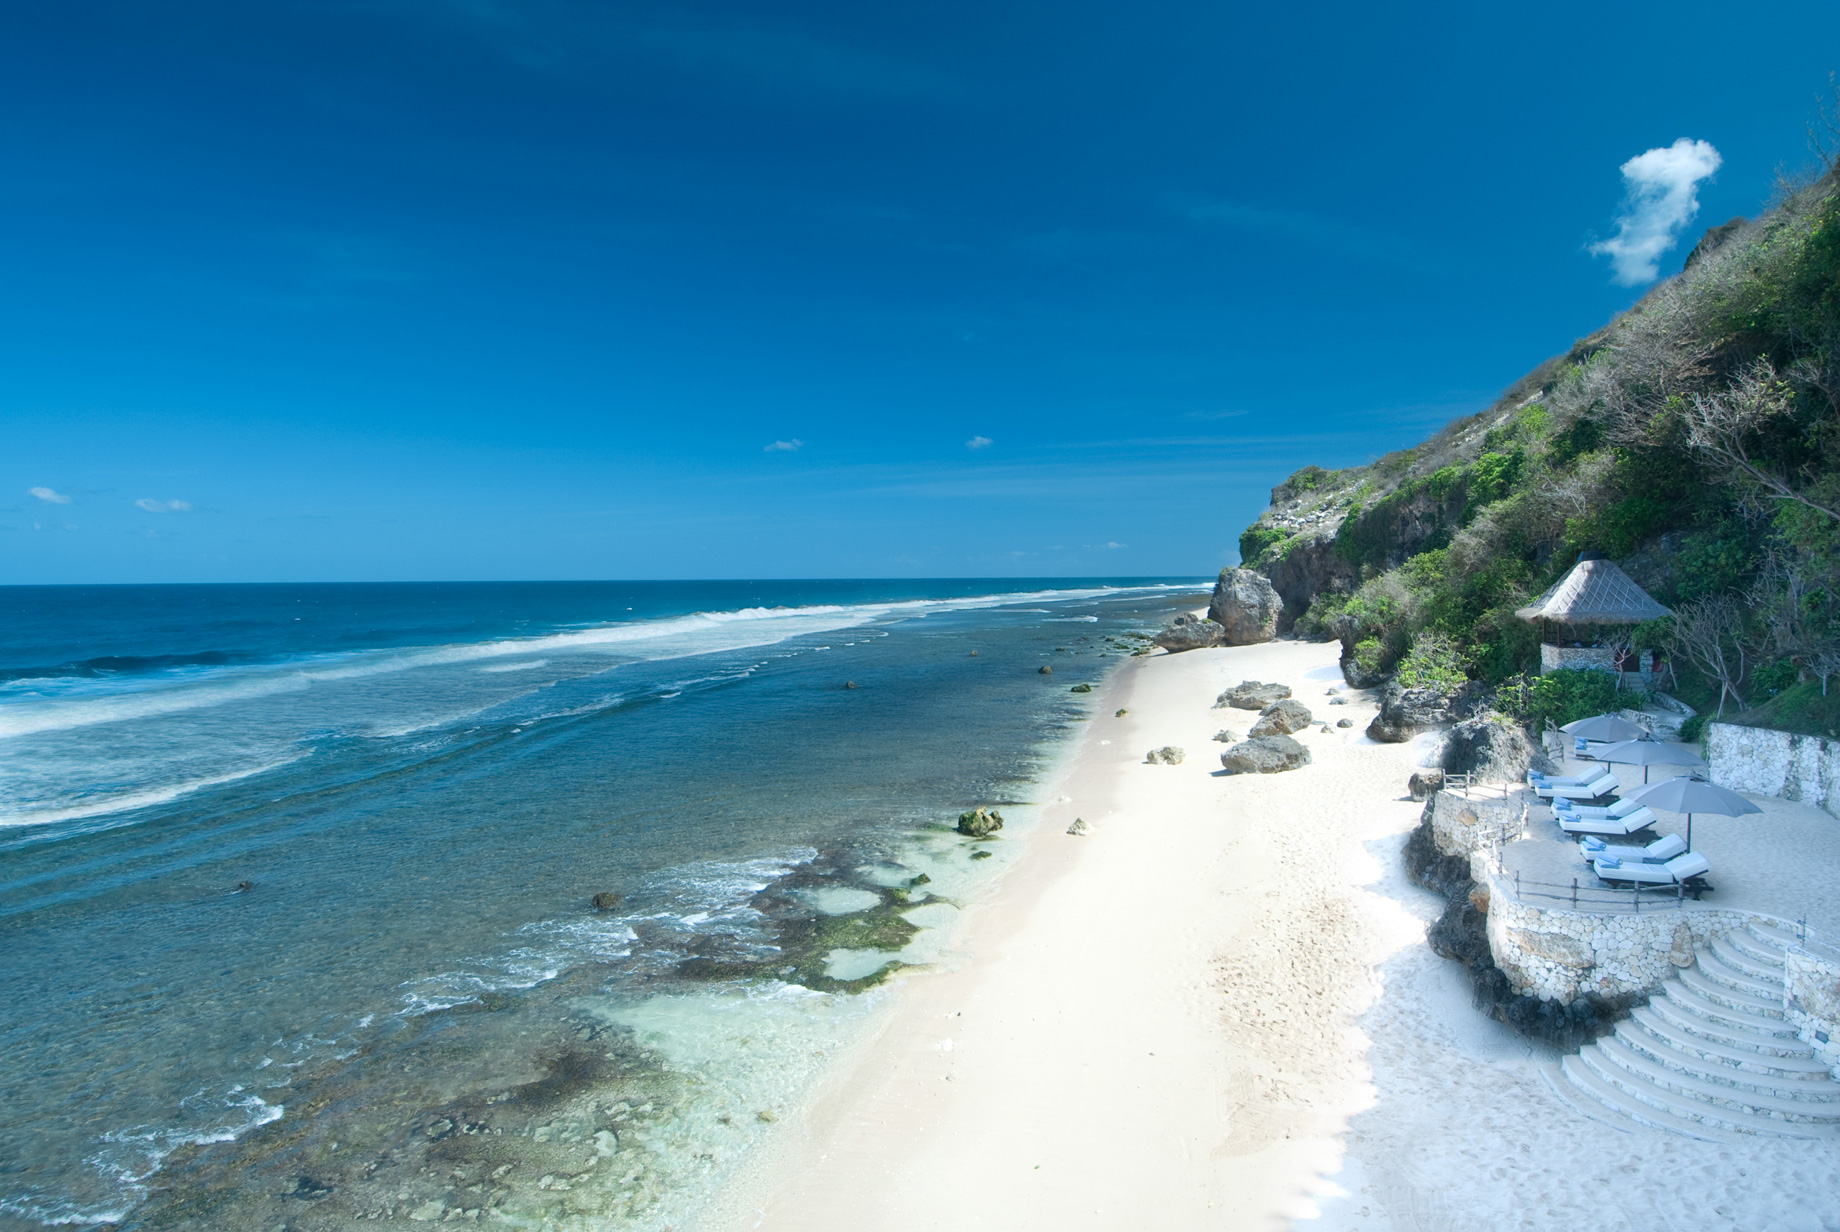 Bvlgari Resort Bali – Uluwatu, Bali, Indonesia – Resort Private White Sand Beach